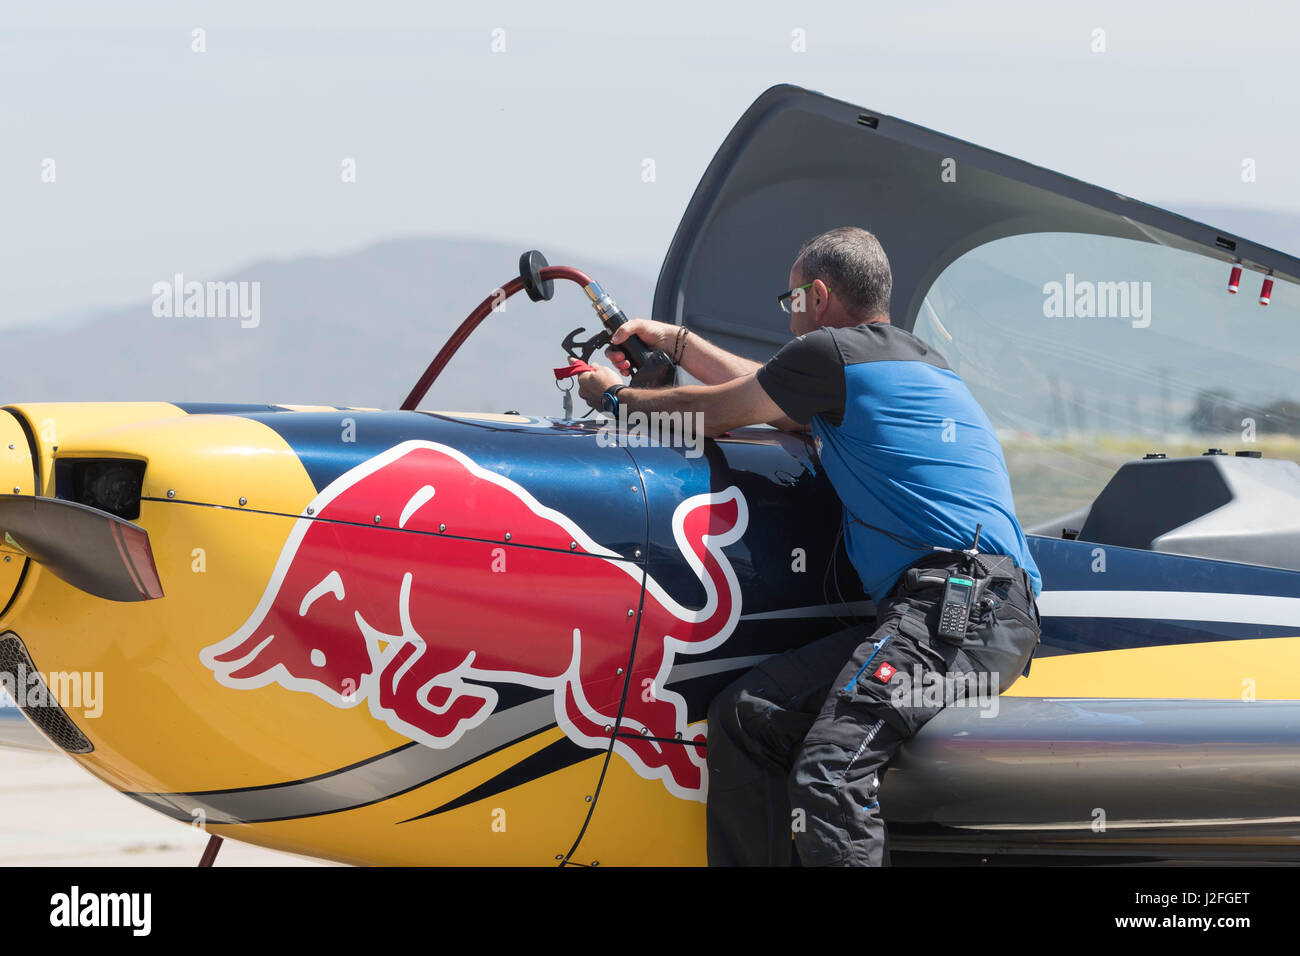 San Diego, USA - 16. April 2017: Befüllen mit Kraftstoff auf dem Display während der Red Bull Air Race World Championship Ebene. Stockfoto